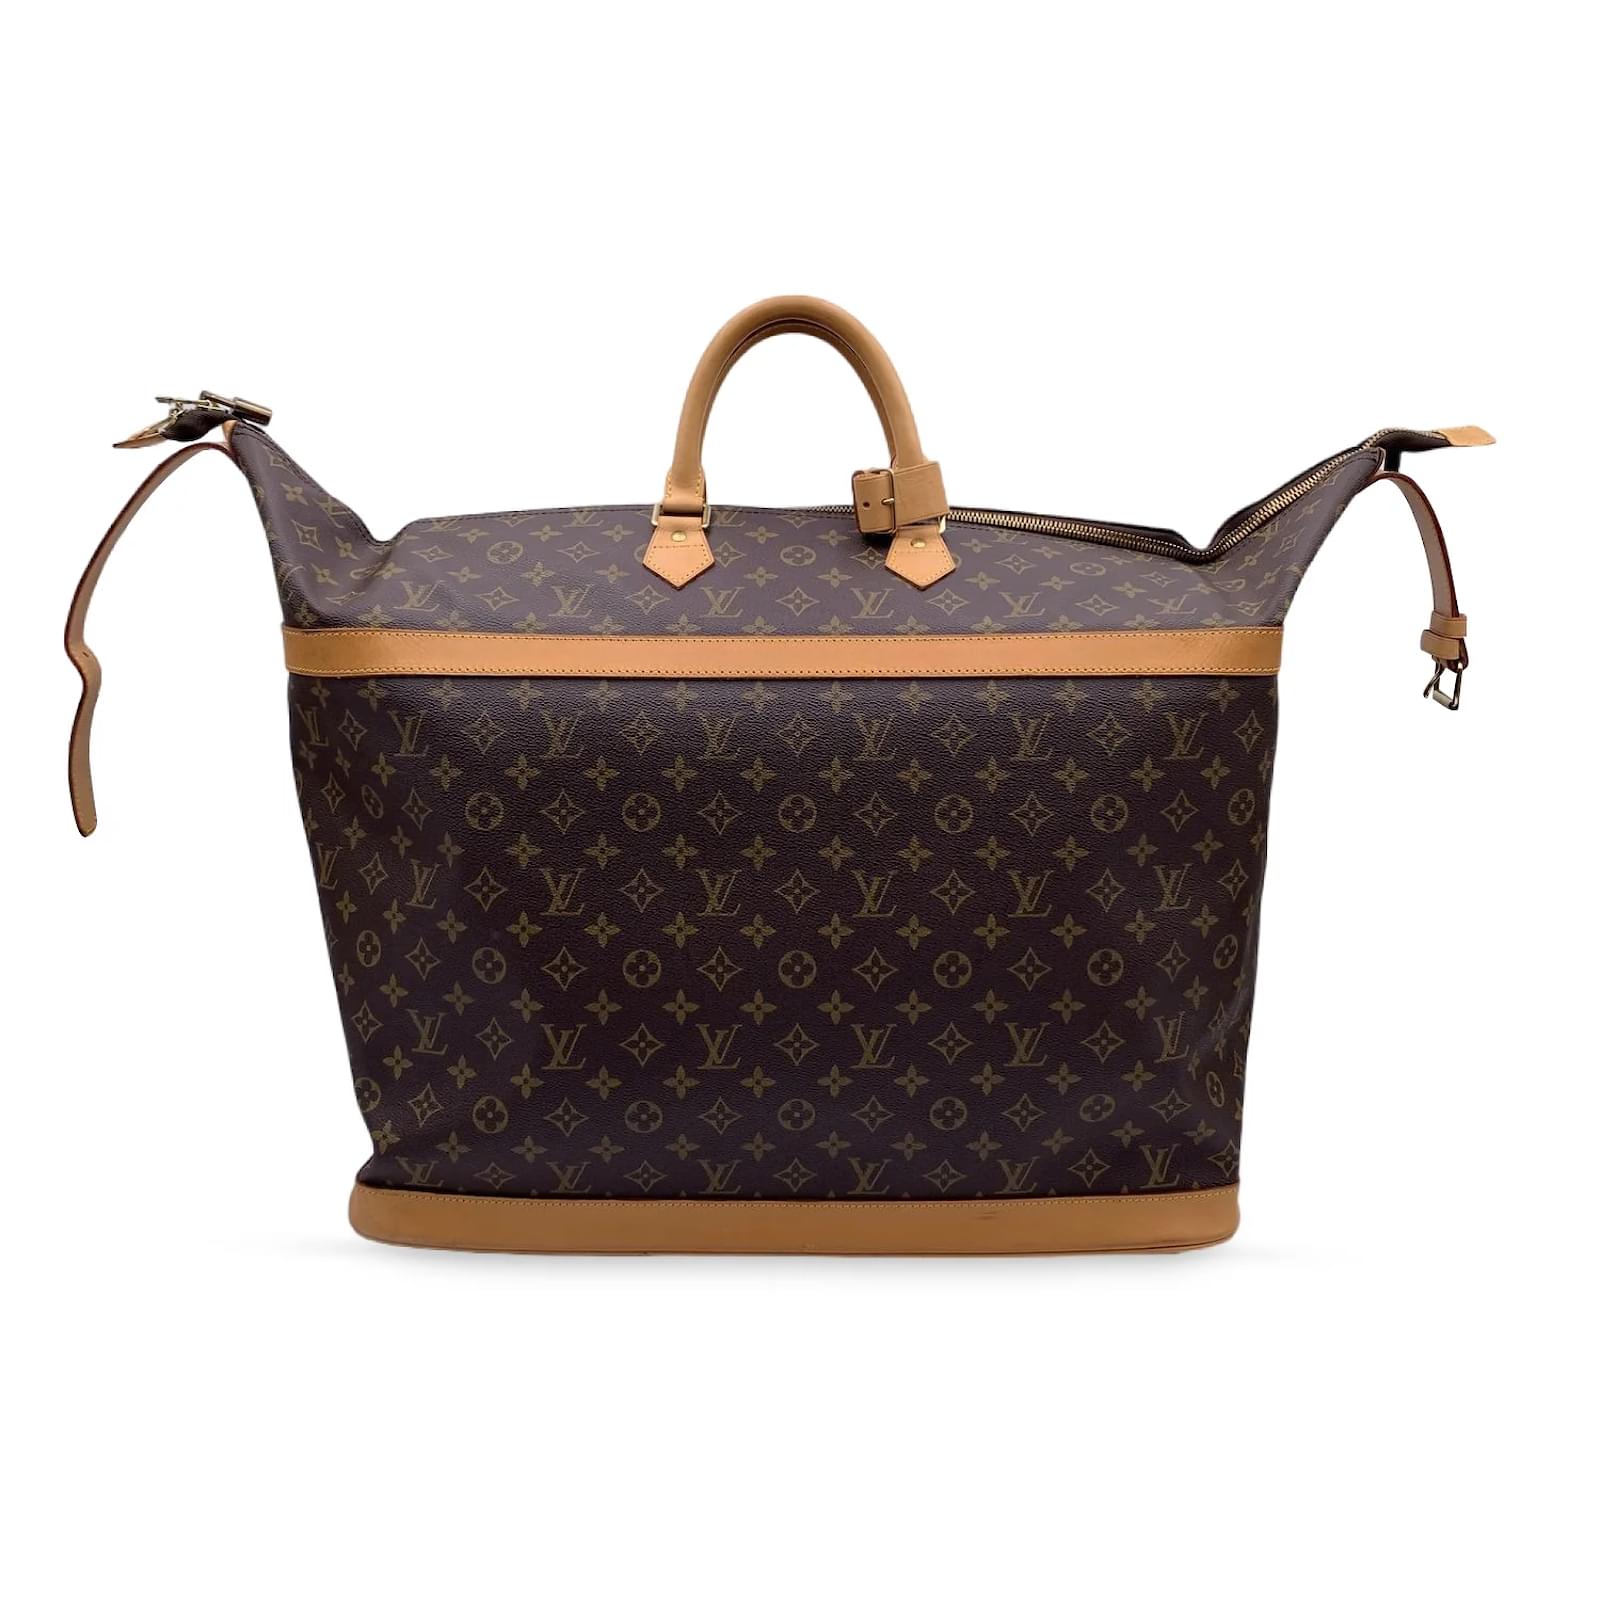 Louis Vuitton Louis Vuitton Brown Damier Cruiser 45 Large Travel Bag